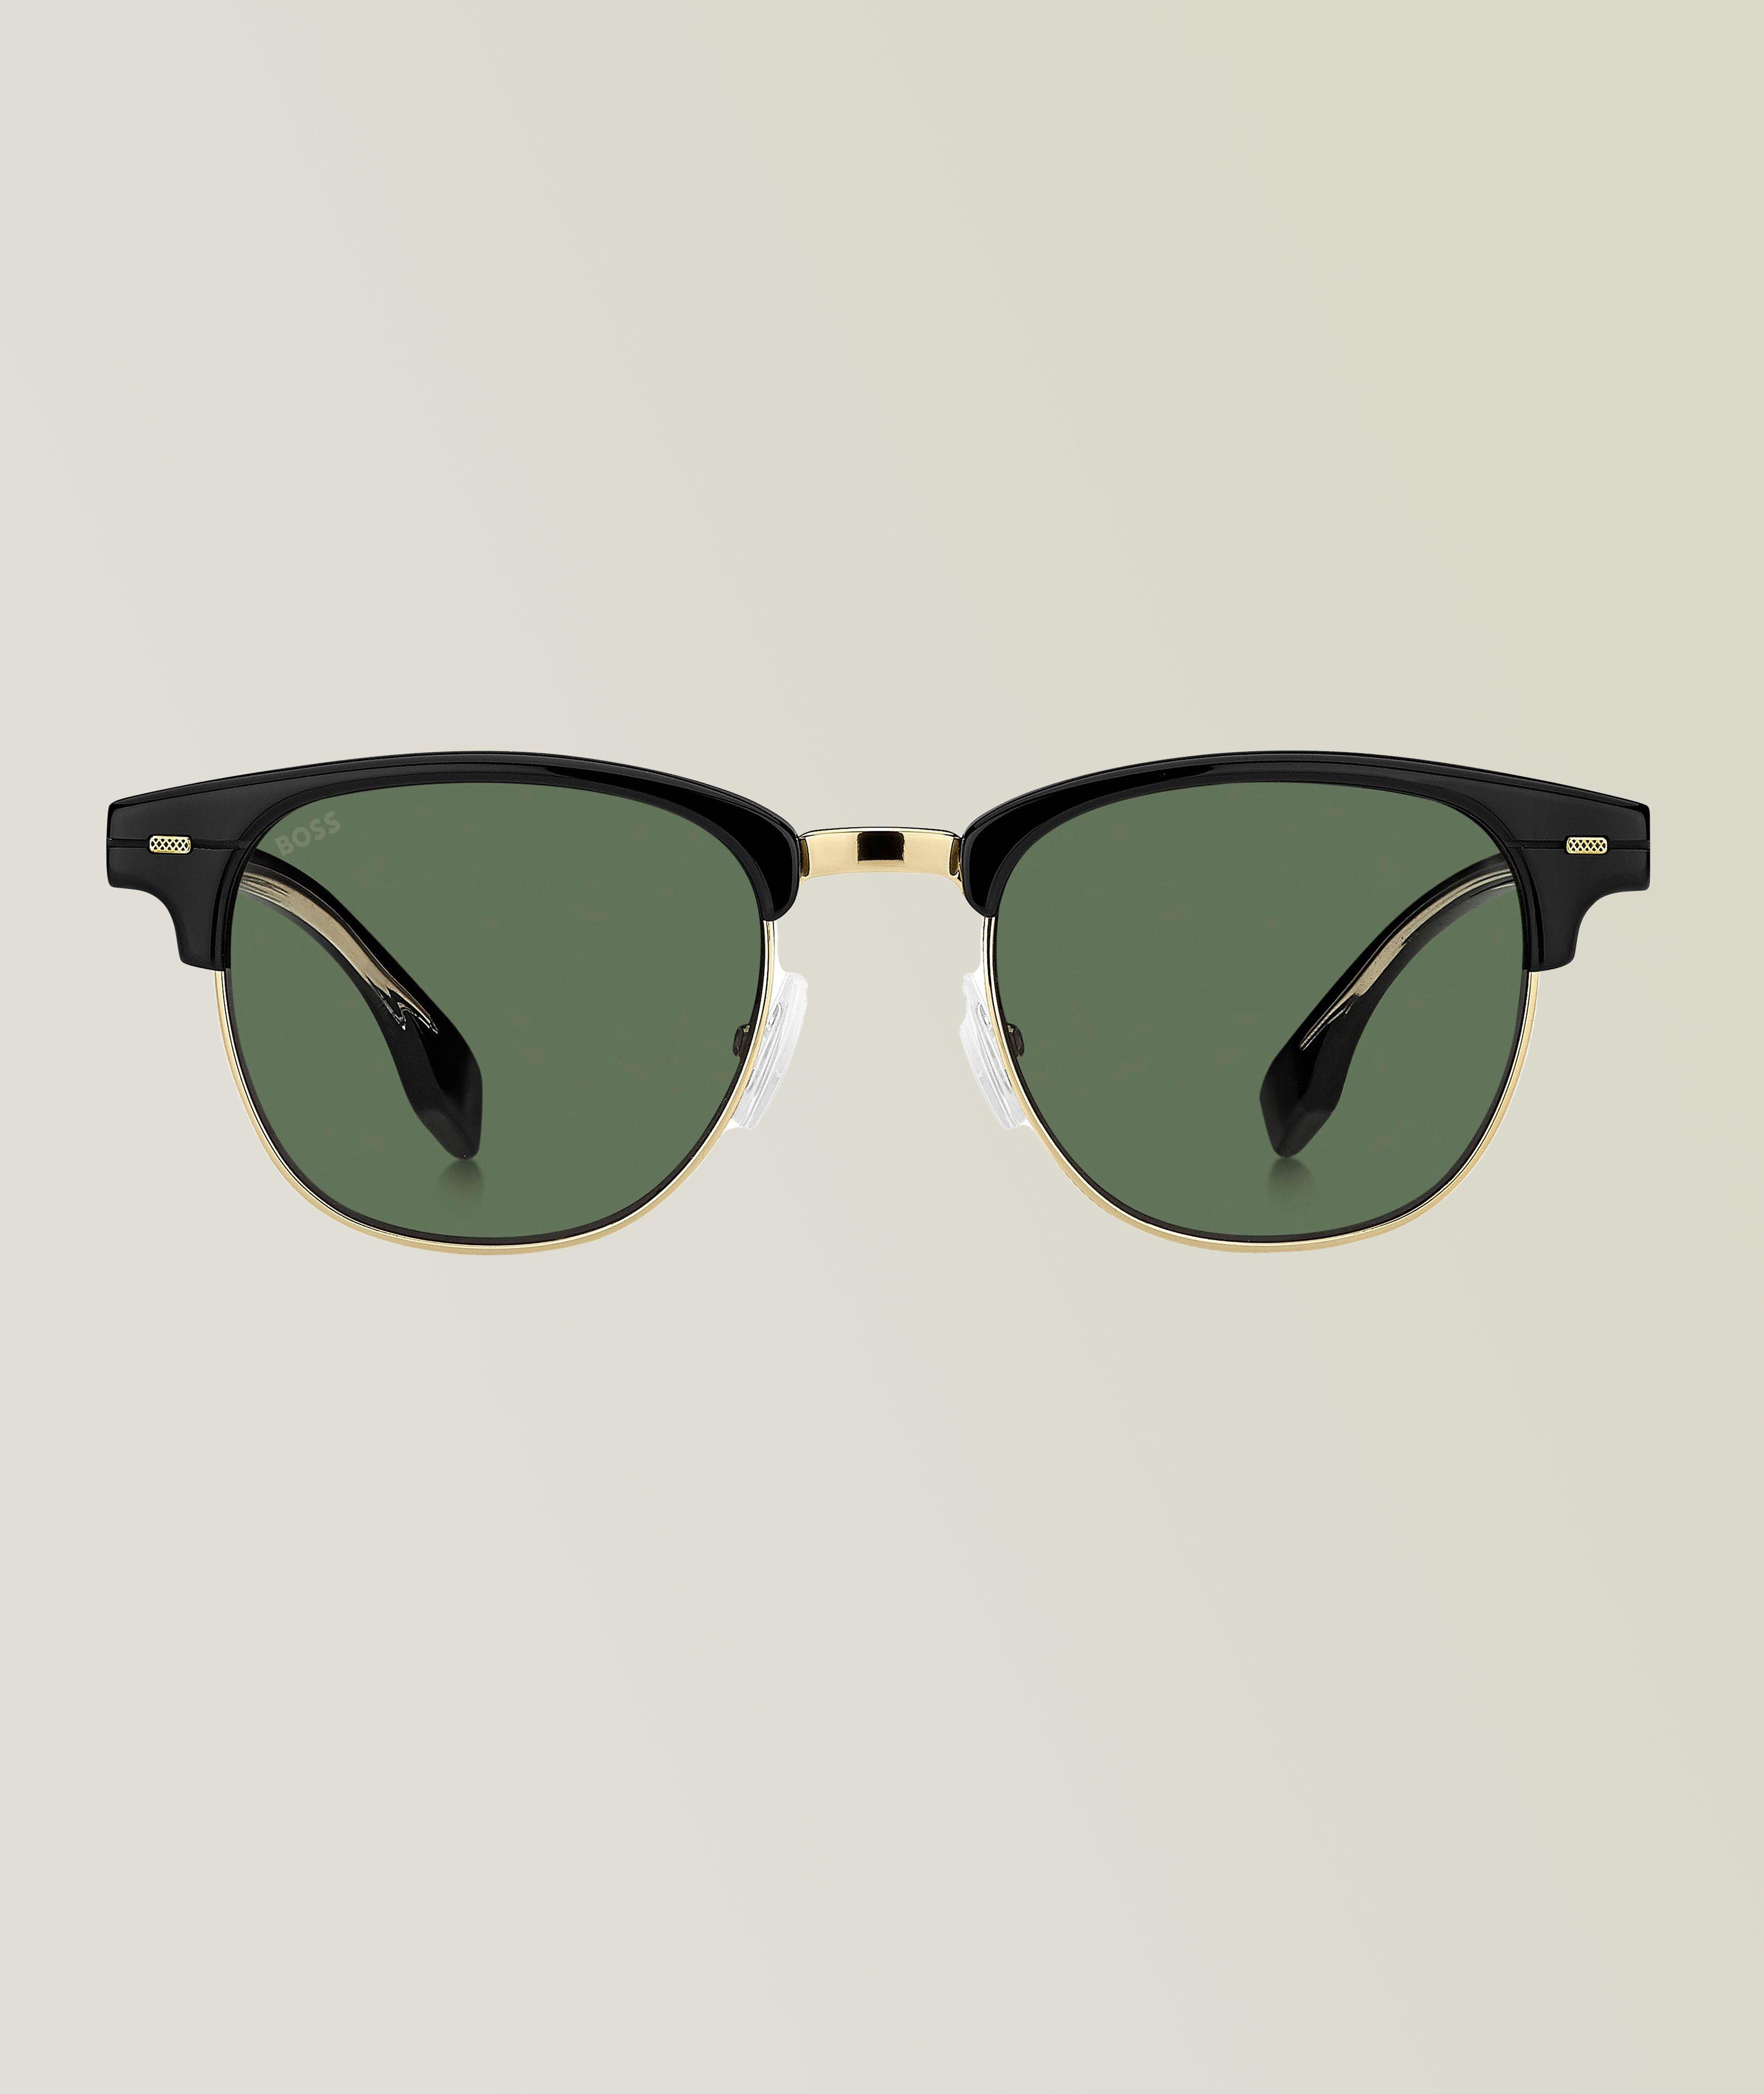 Hugo Boss Black Gold Sunglasses With Green Lenses image 0